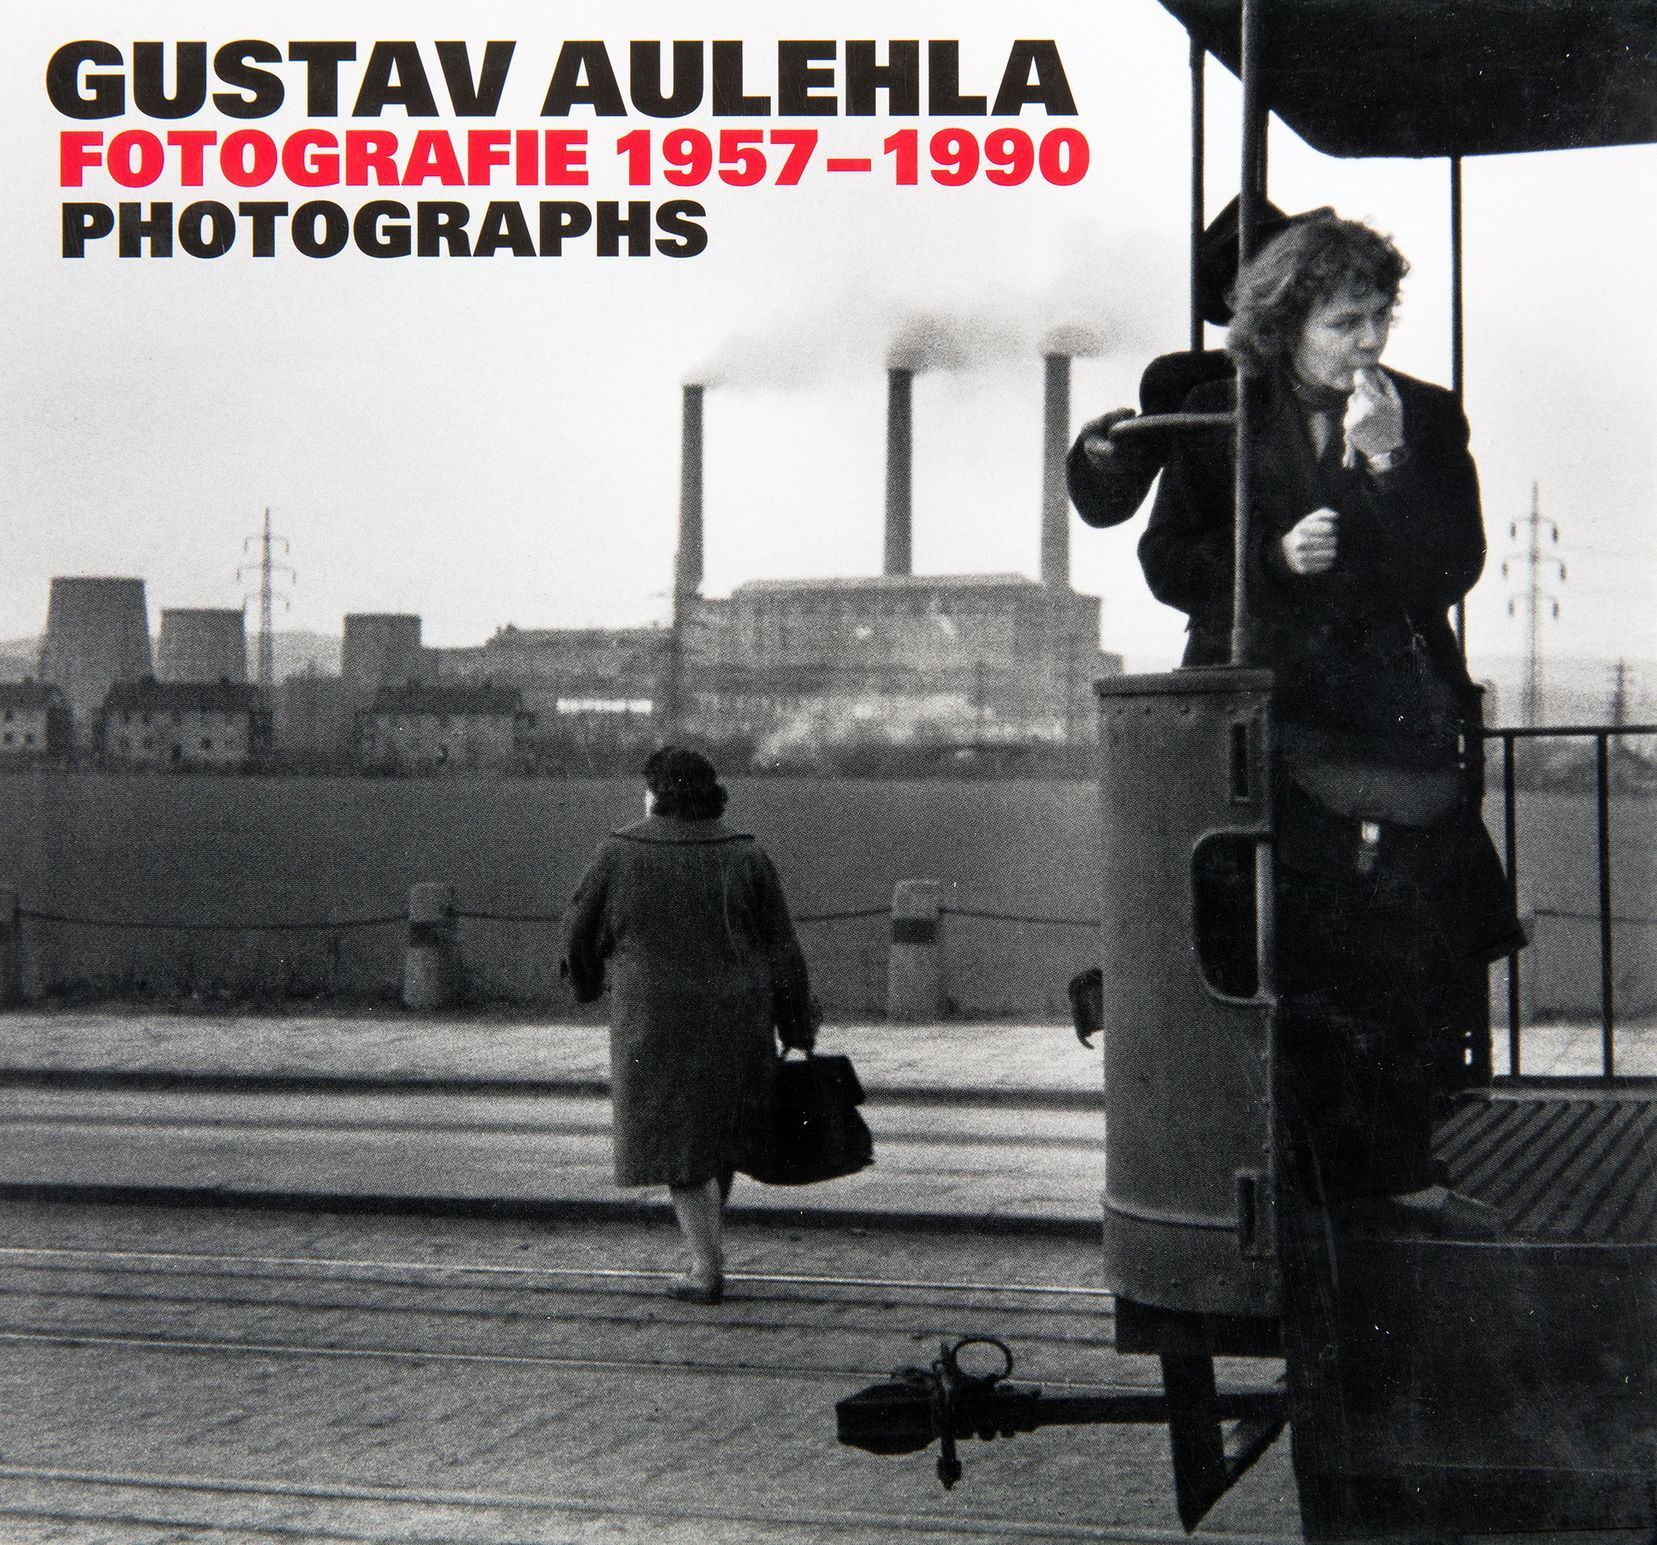 Gustav Aulehla: Fotografie 1957 - 1990